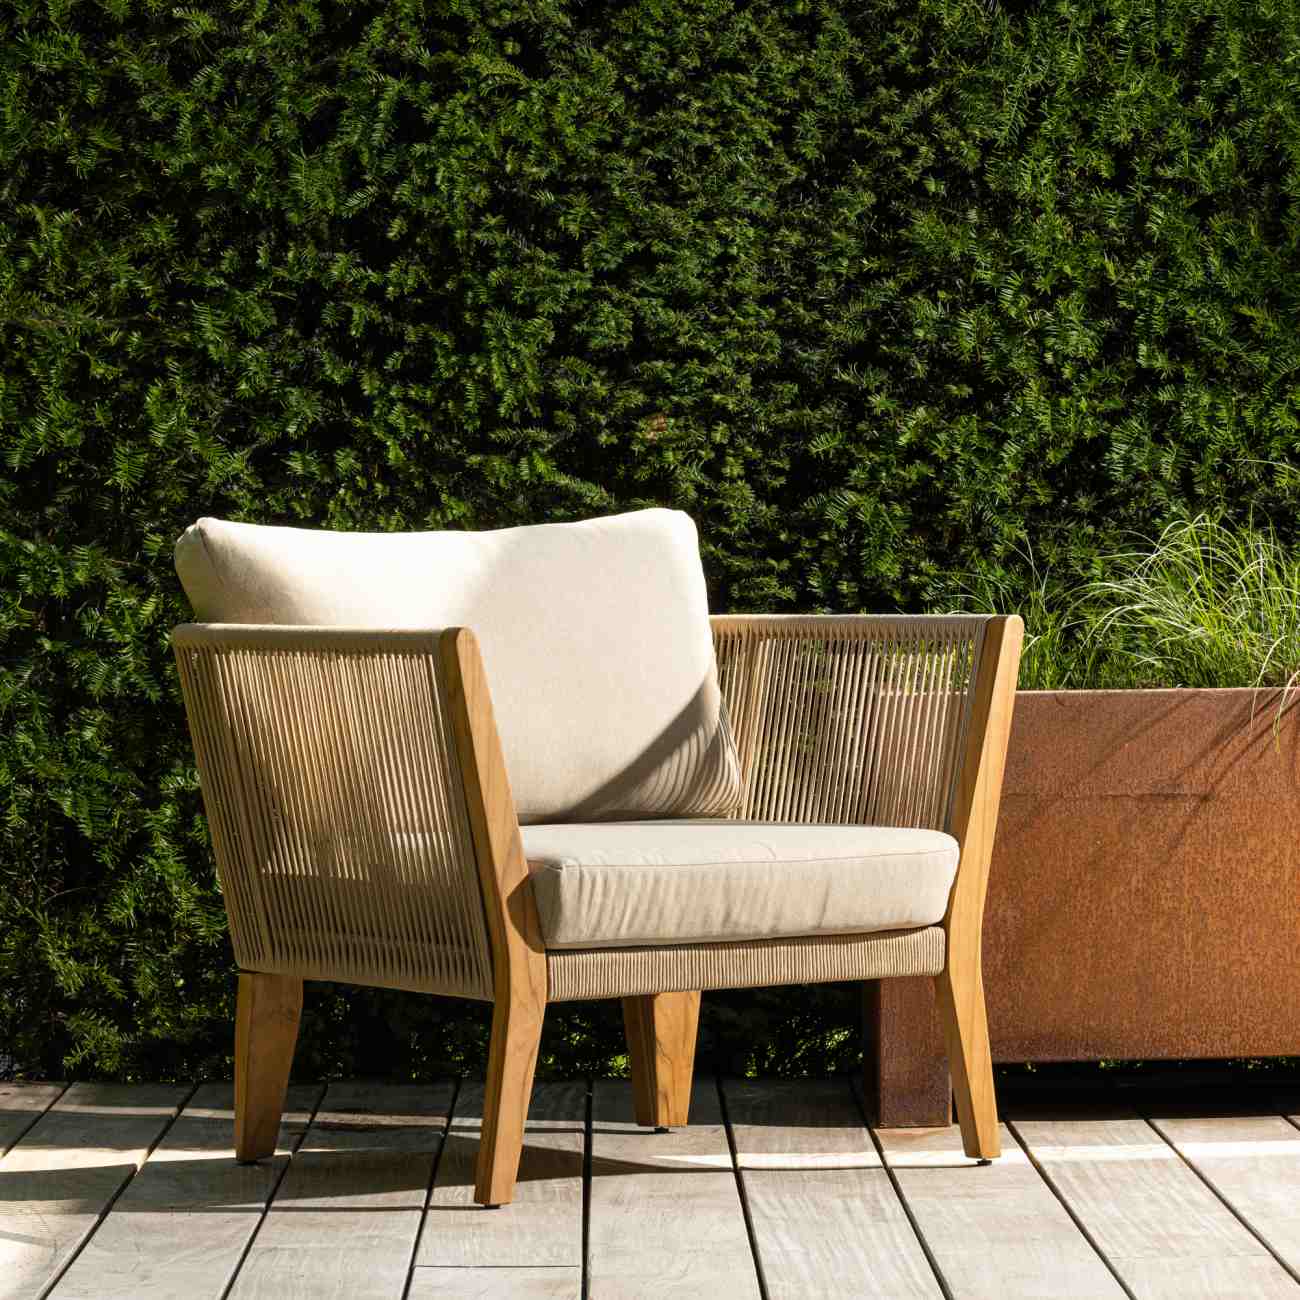 Der Gartensessel San Remo überzeugt mit seinem modernen Design. Gefertigt wurde er aus Stoff, welcher einen Sand Farbton besitzt. Das Gestell ist aus Teakholz und hat eine natürliche Farbe. Der Sessel besitzt eine Sitzhöhe von 41 cm.